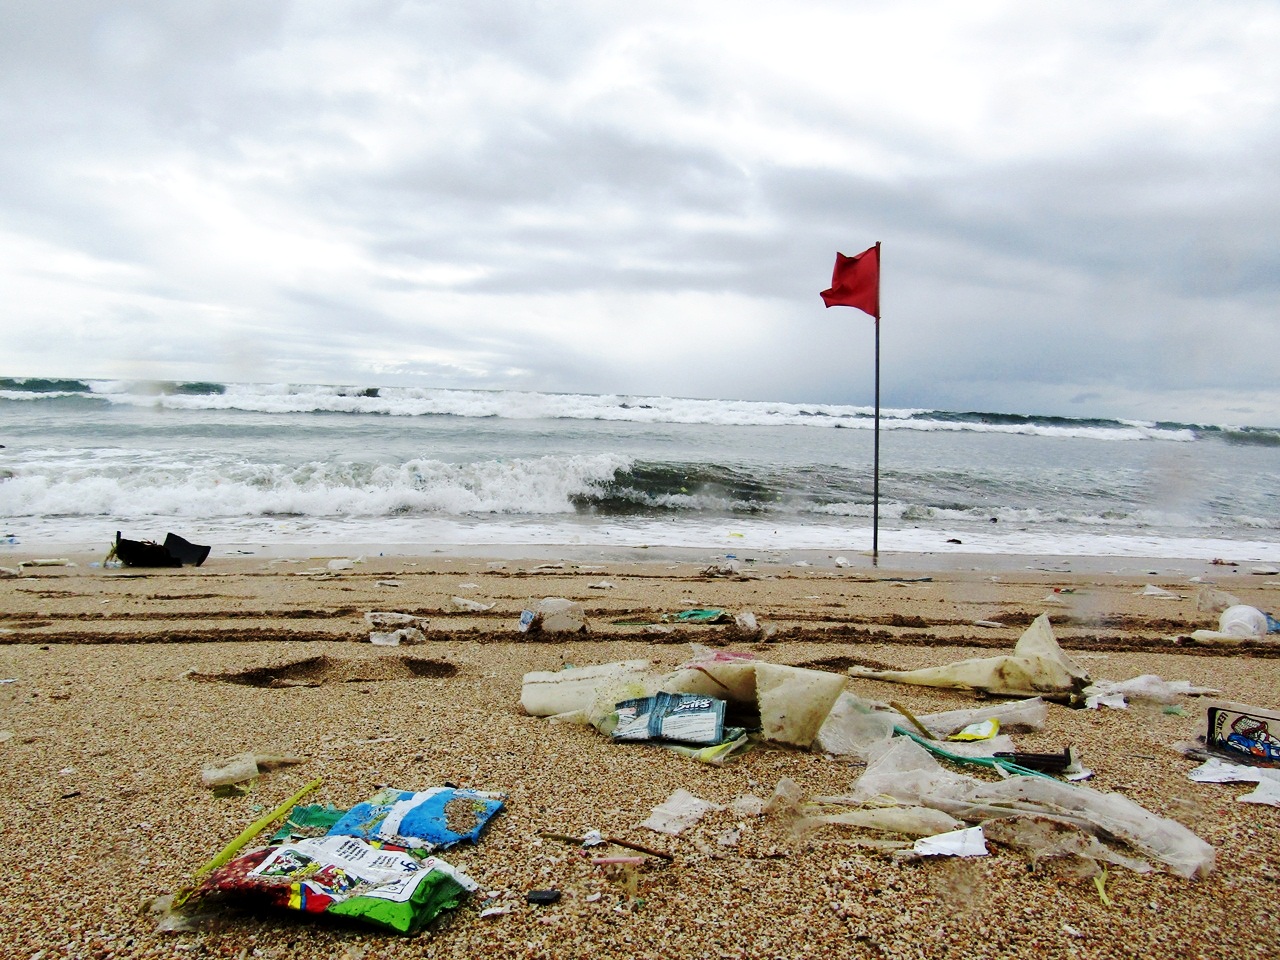 Hasil survei menunjukkan mayoritas sampah di pesisir Bali adalah plastik dan sumbernya dari daratan, sampah manusia yang dibuang sembarangan. Foto: Luh De Suriyani